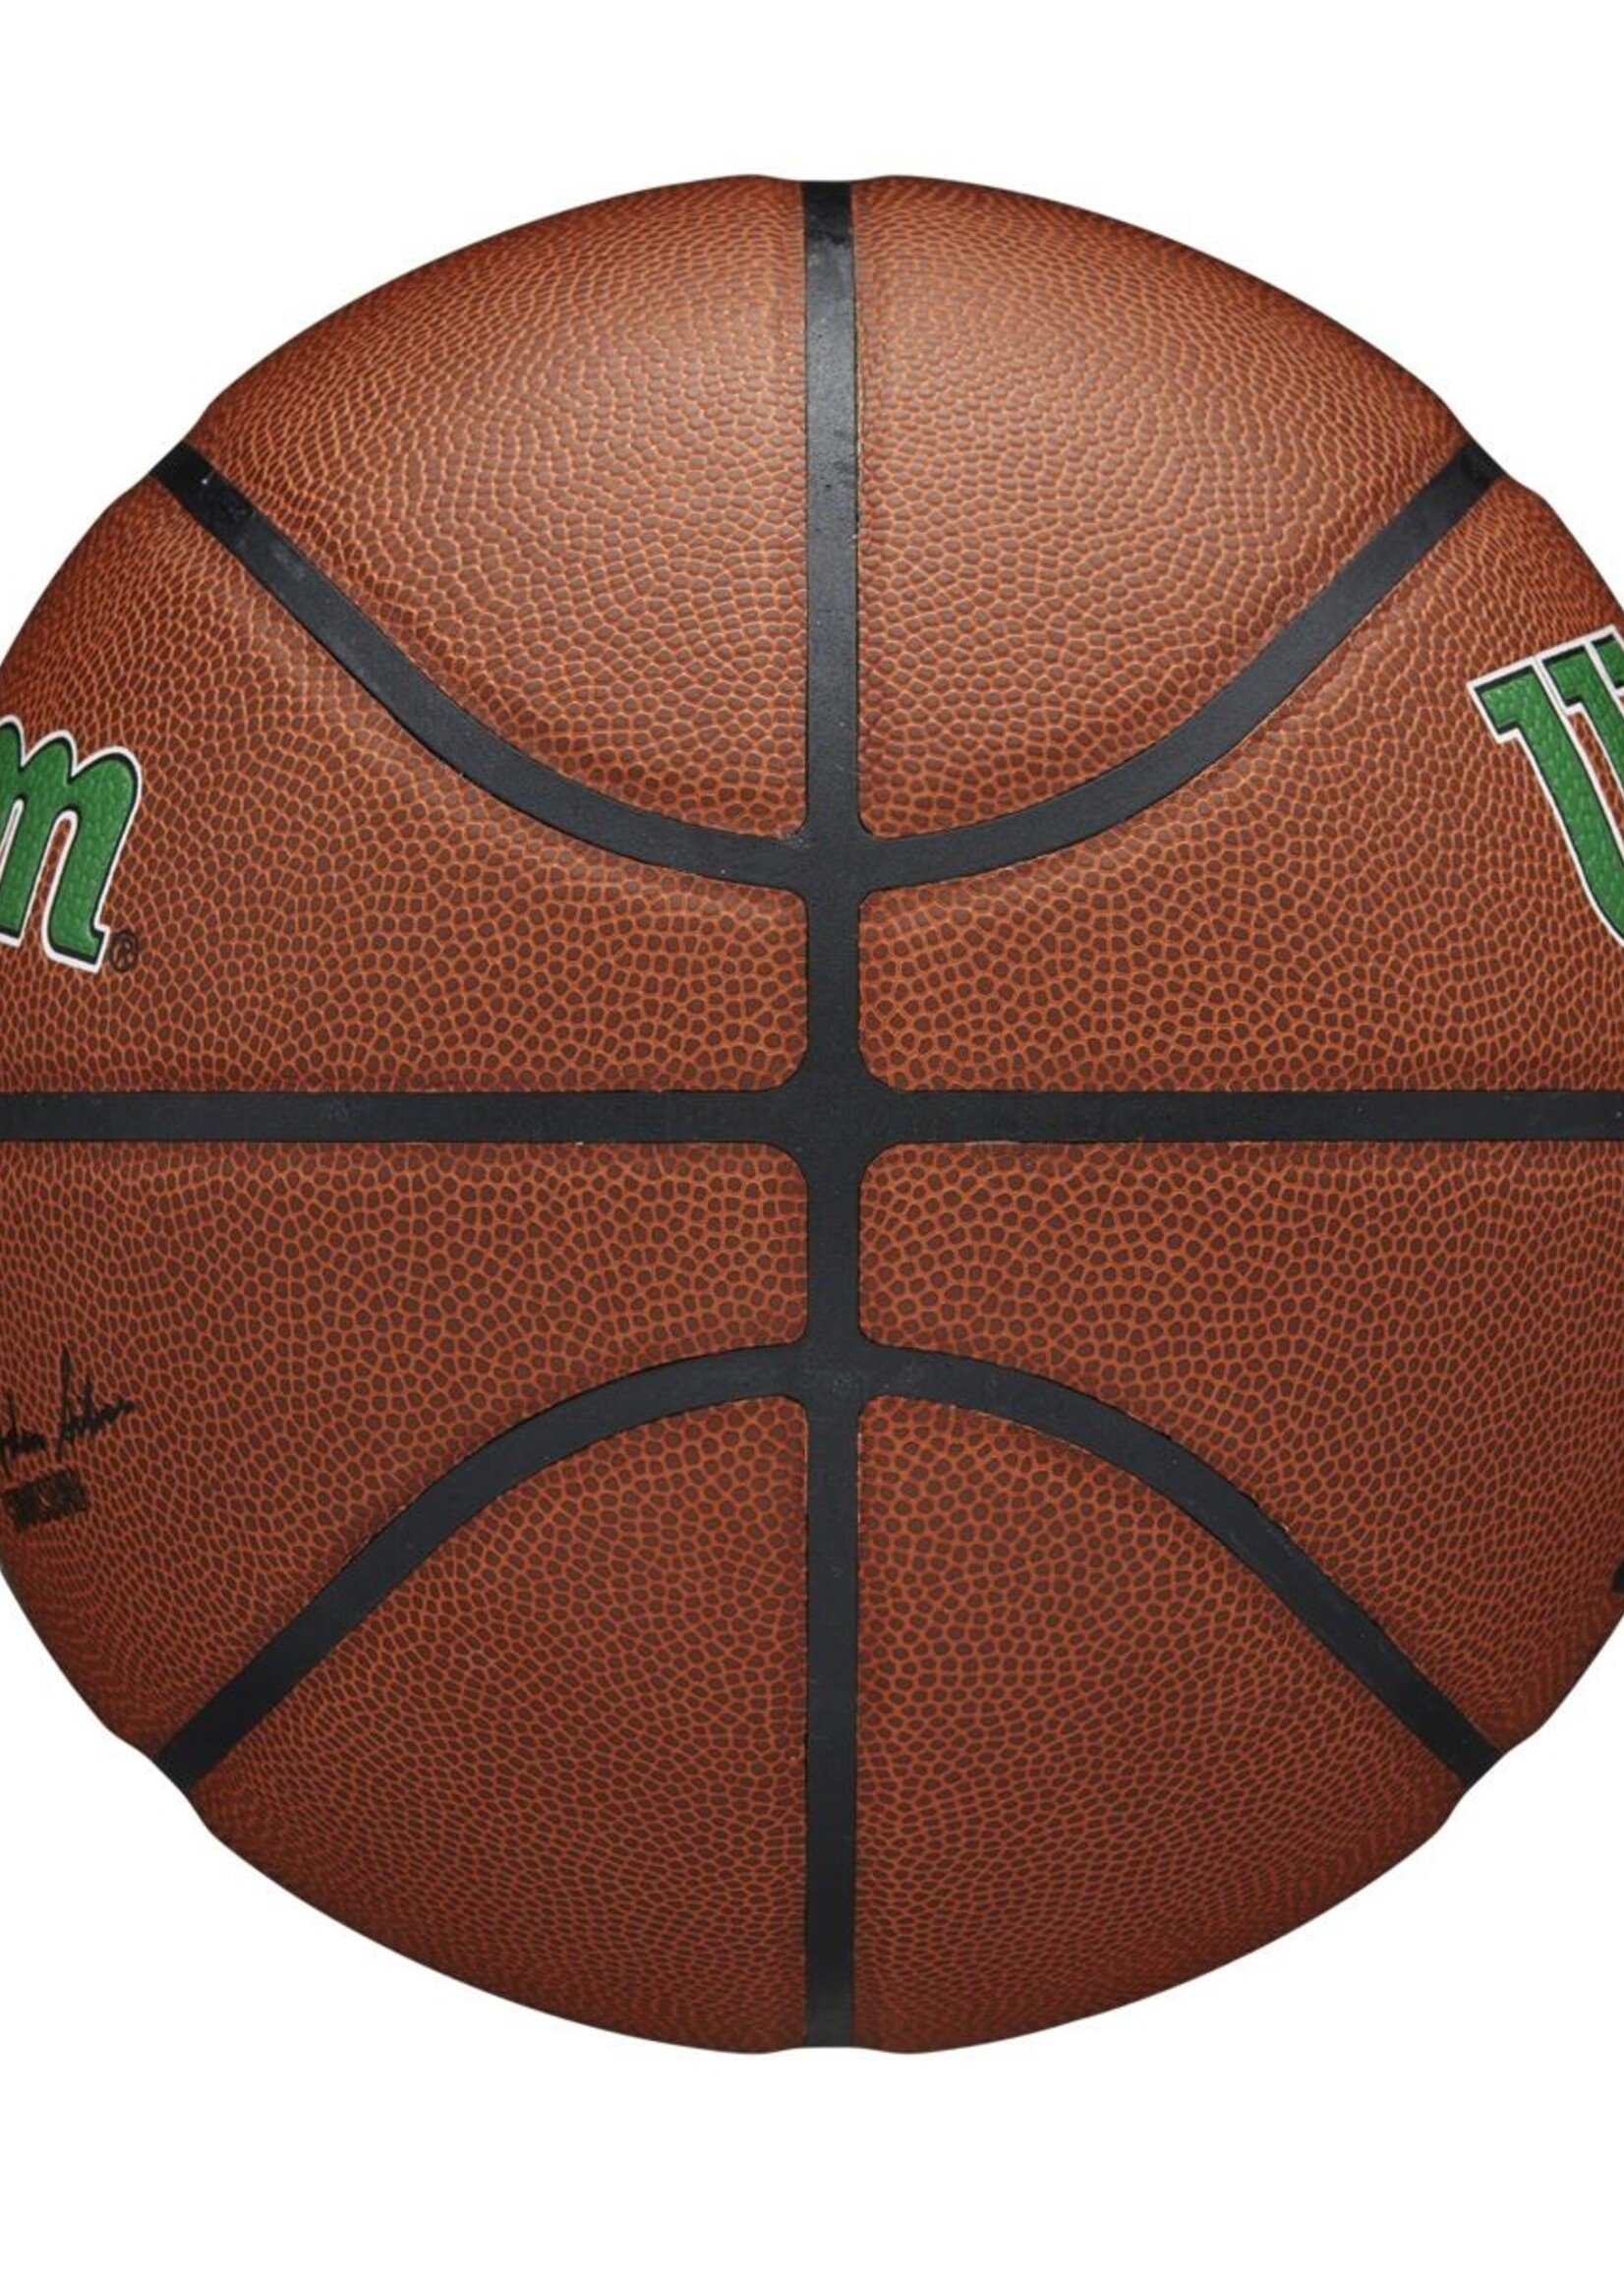 Wilson Wilson NBA BOSTON CELTICS Composite Indoor / Outdoor Basketbal (7)